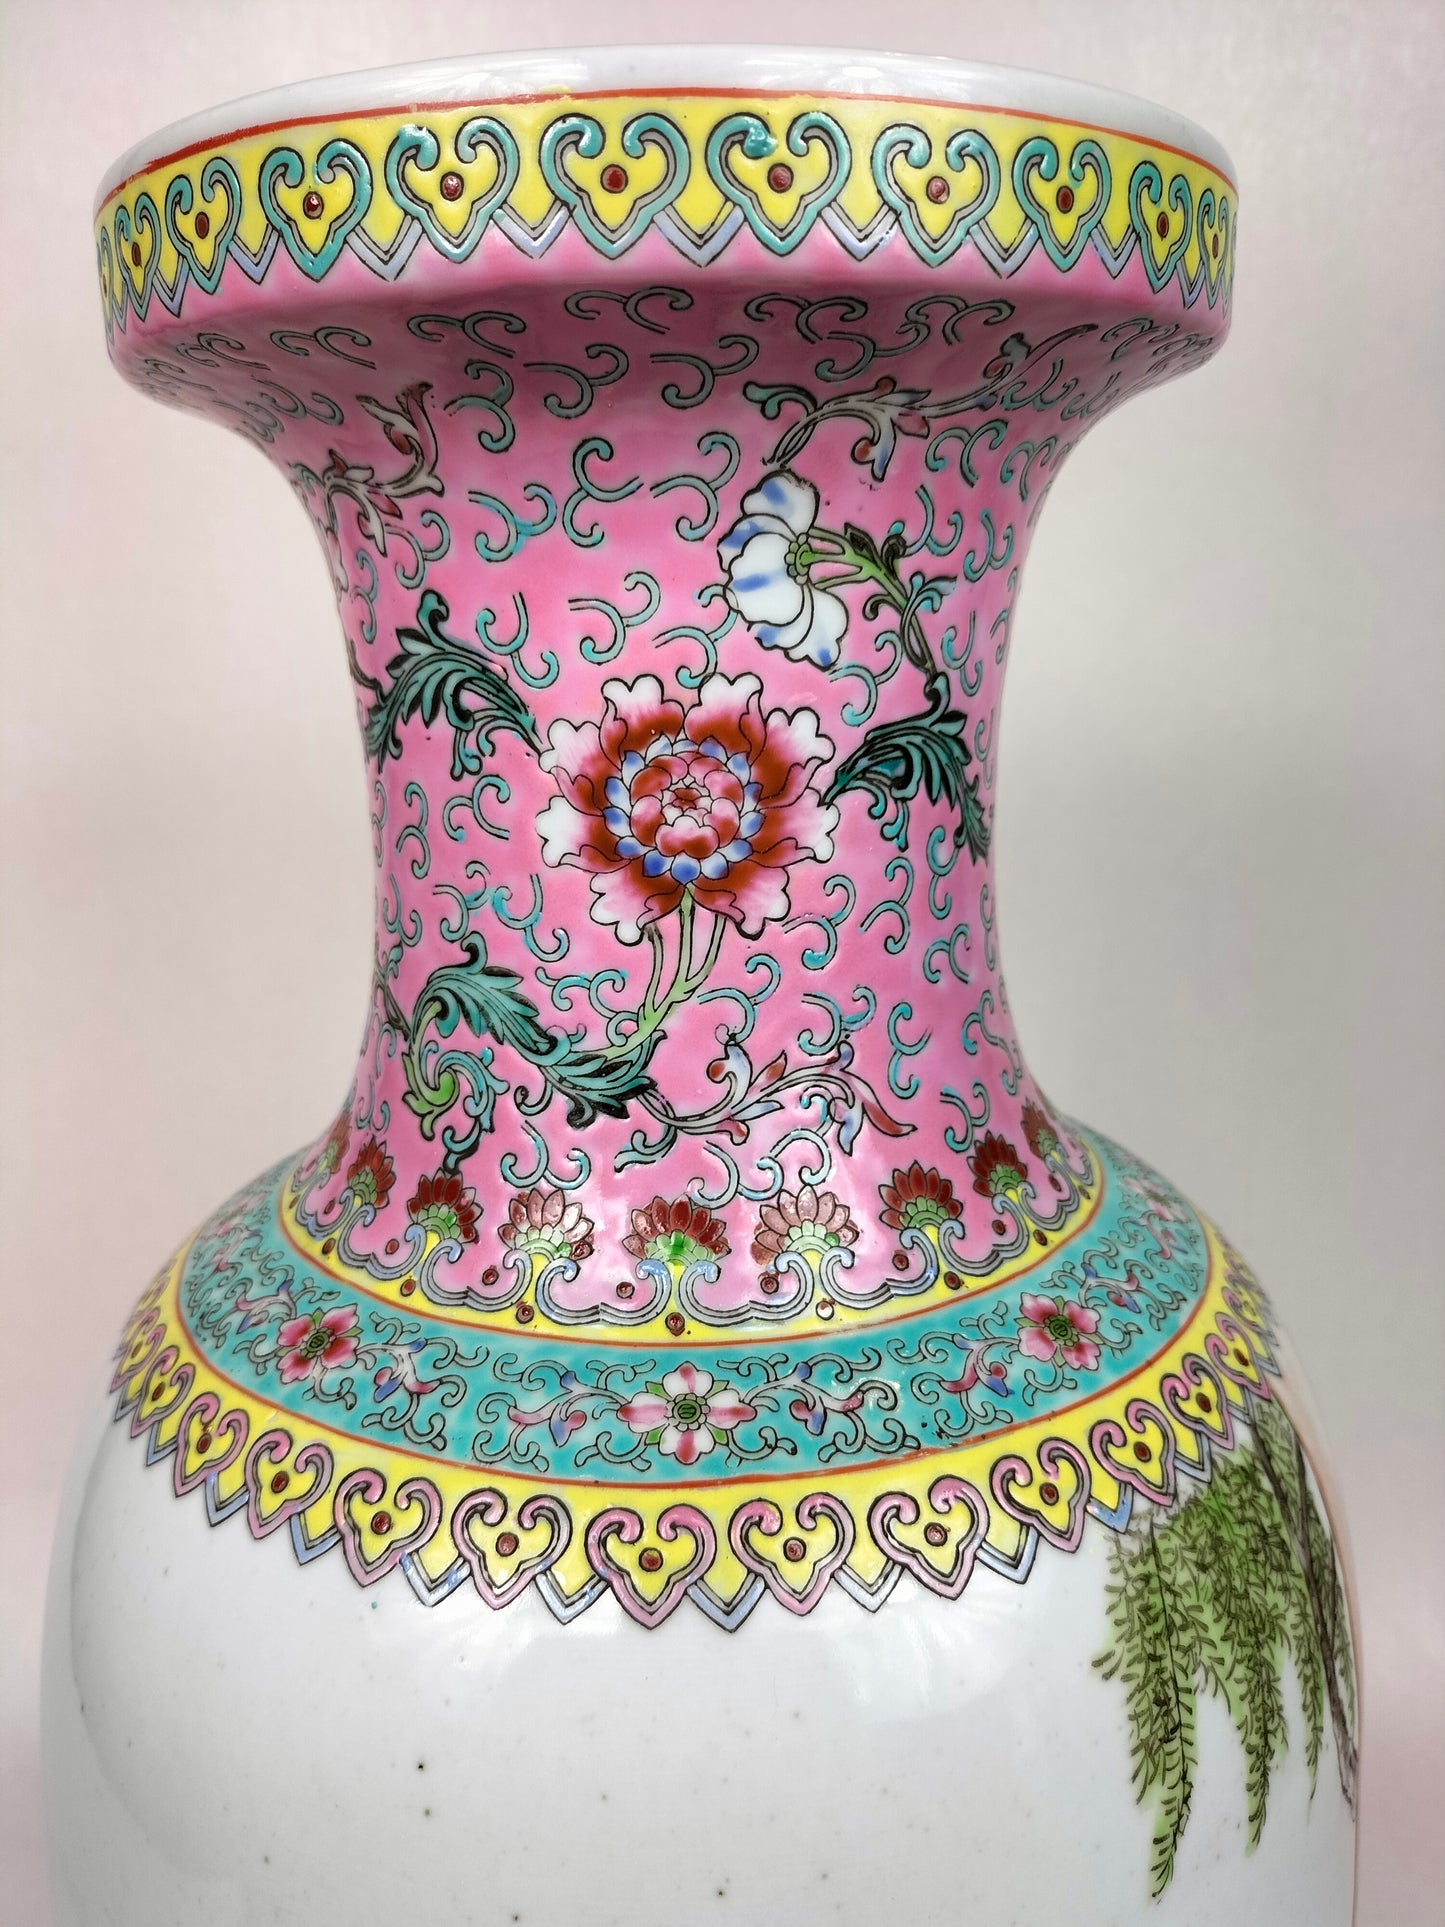 Grande vaso chinês da família rosa com cena de jardim // Jingdezhen - século XX